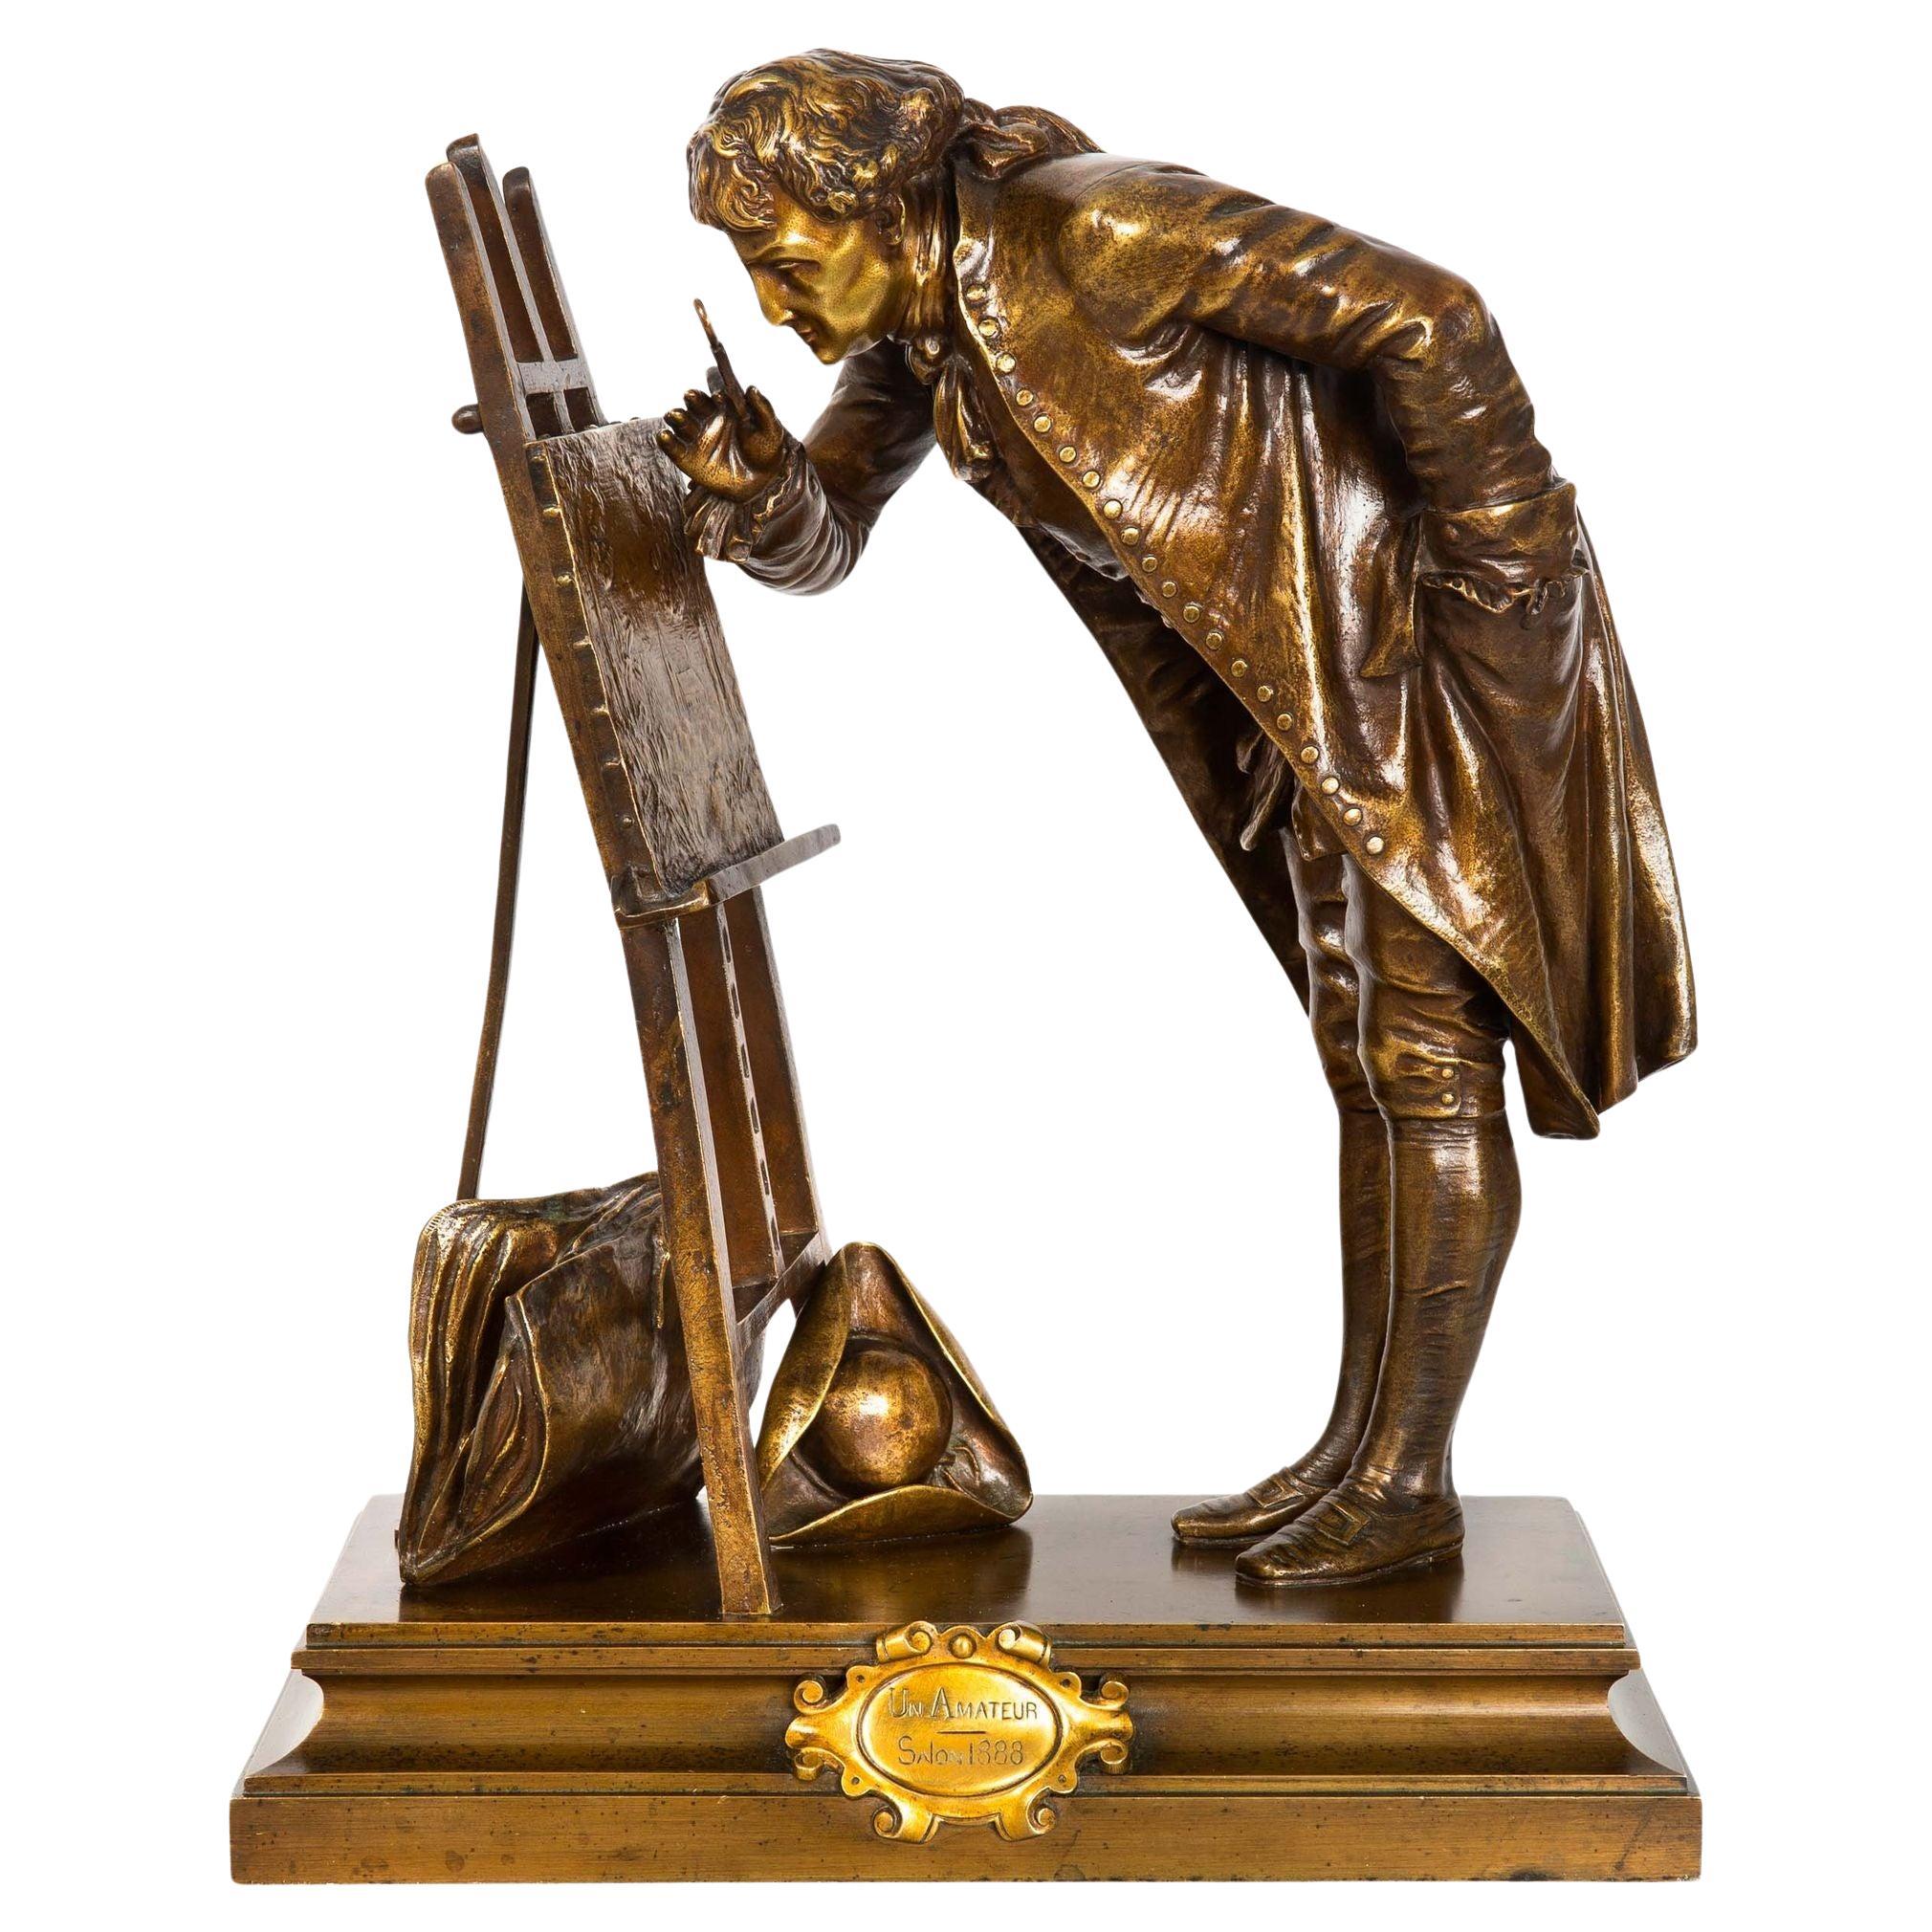 French Bronze Sculpture “The Amateur” by Pierre Detrier circa 1890